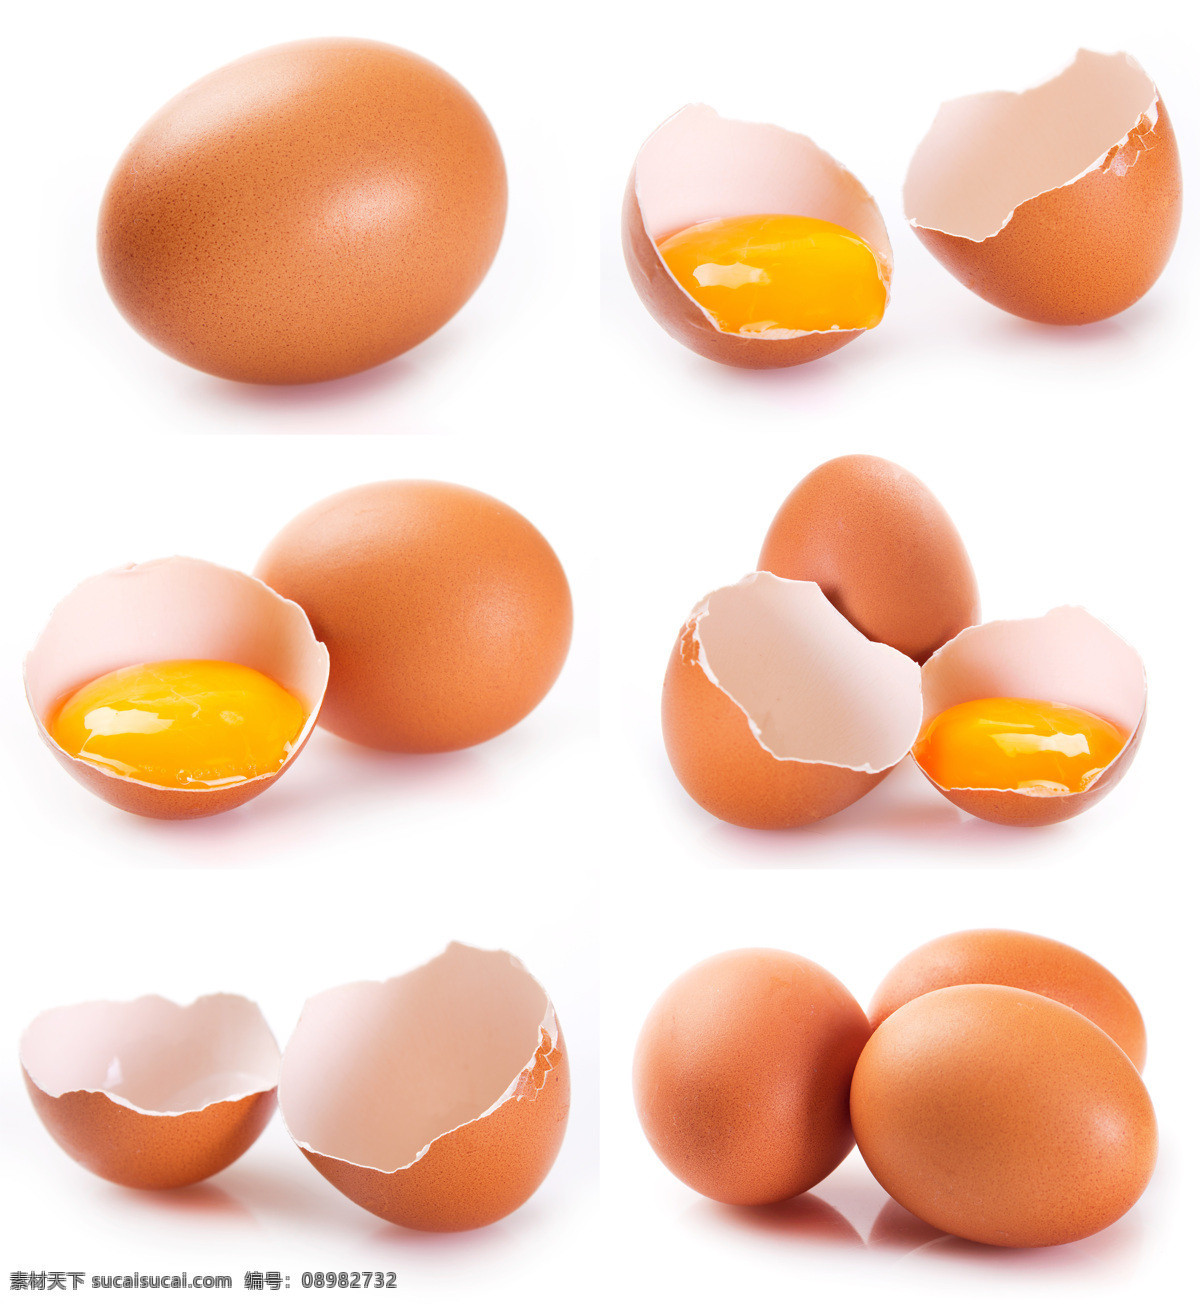 食物 蛋壳 蛋黄 五谷杂粮鸡蛋 初生蛋 蛋 土鸡蛋 餐饮美食 食物原料